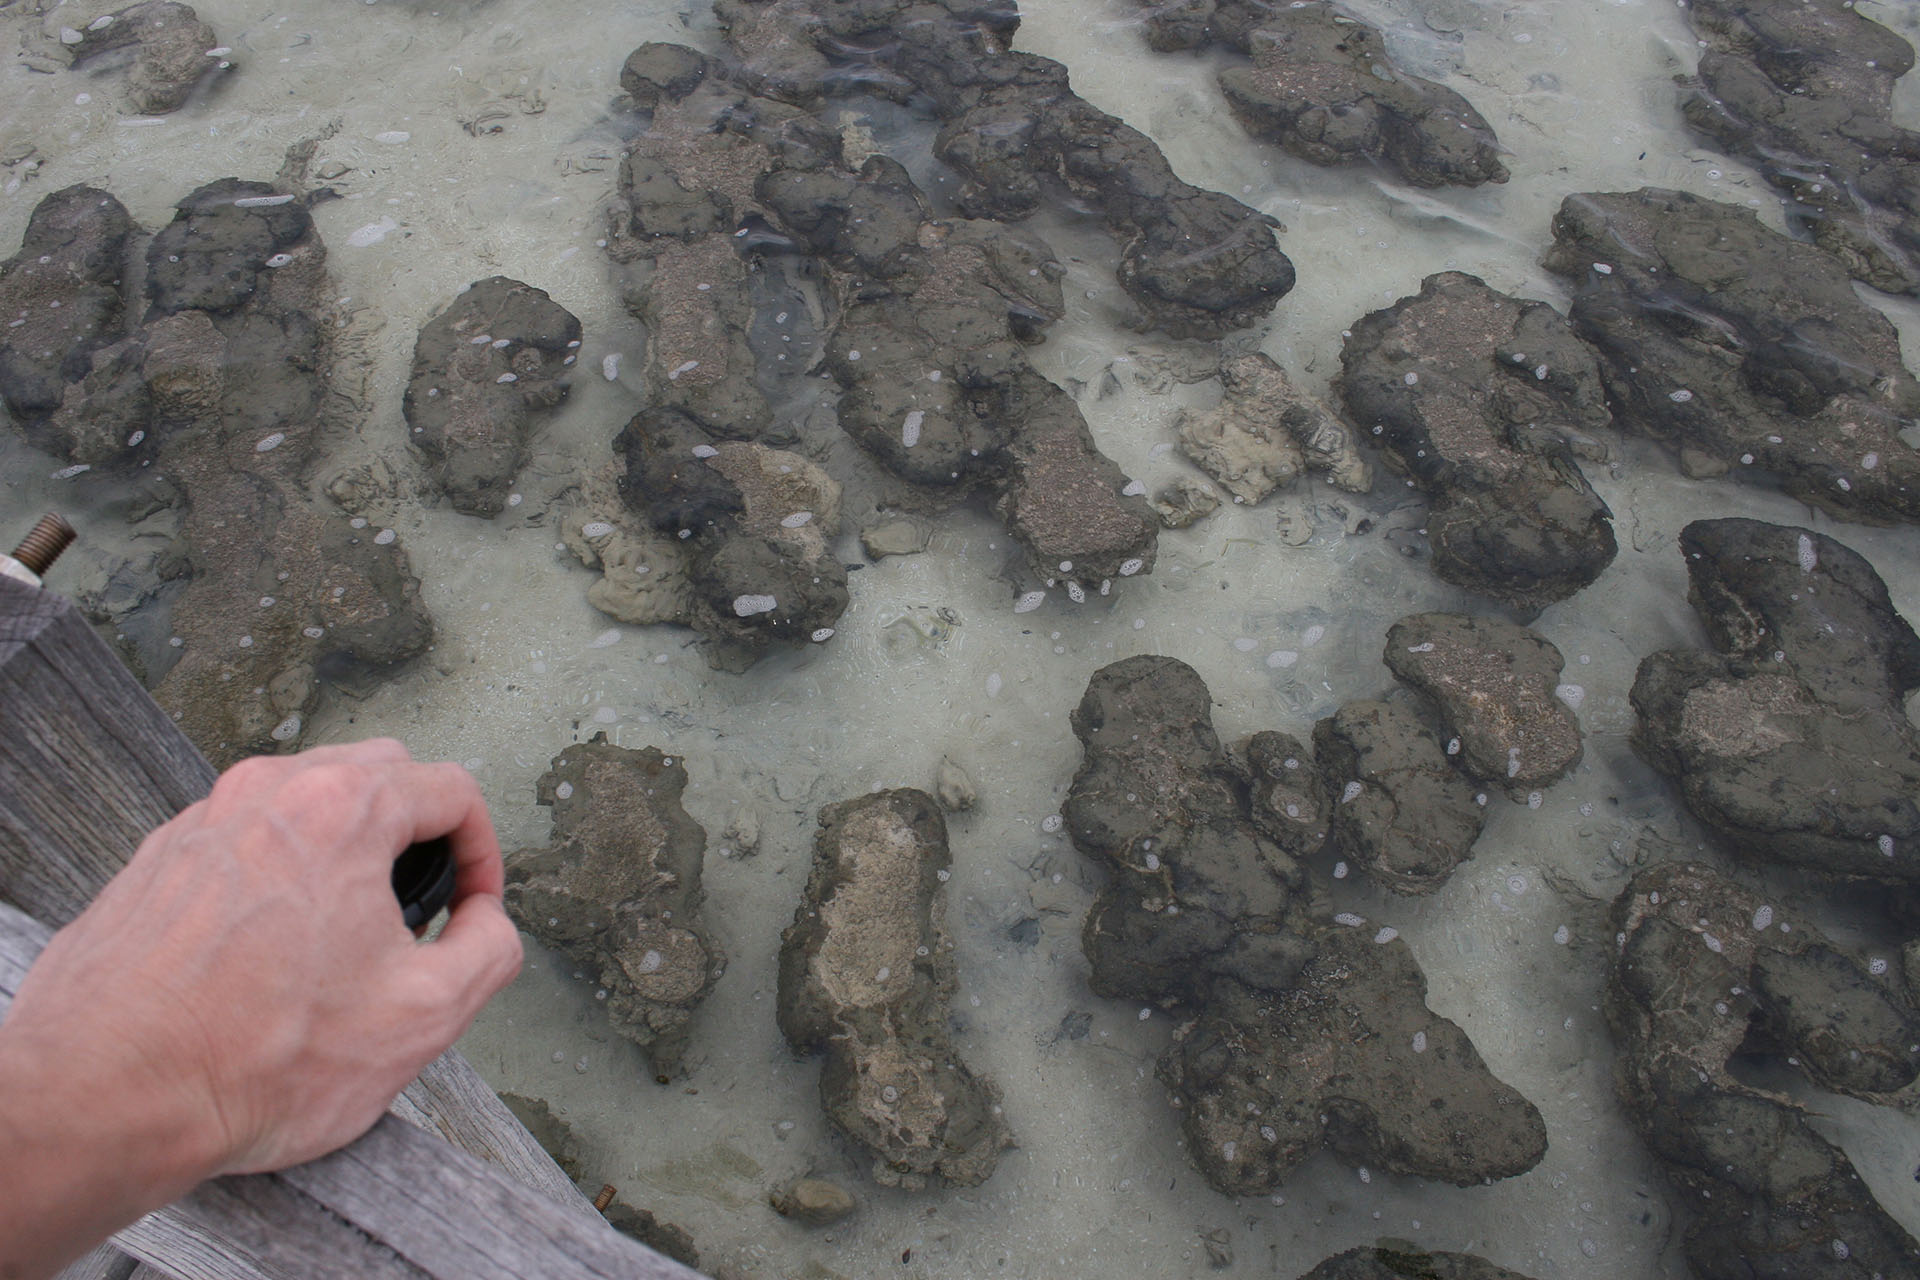 More stromatolites in the sea water.